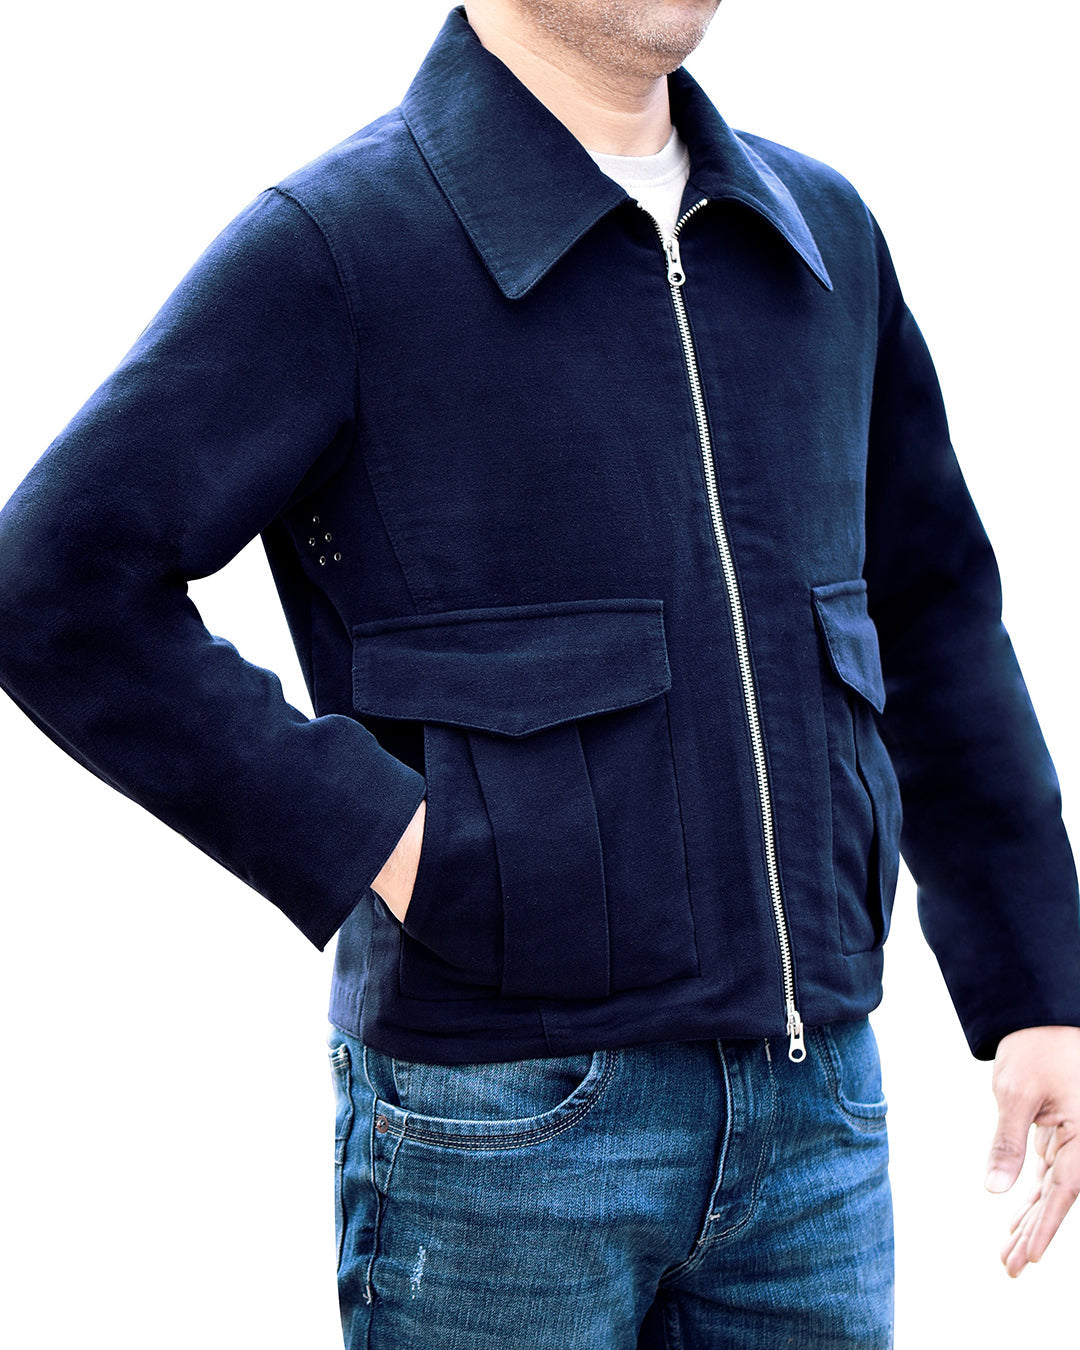 Model wearing the moleskin shirt jacket for men by Luxire in dark blue hand in pocket